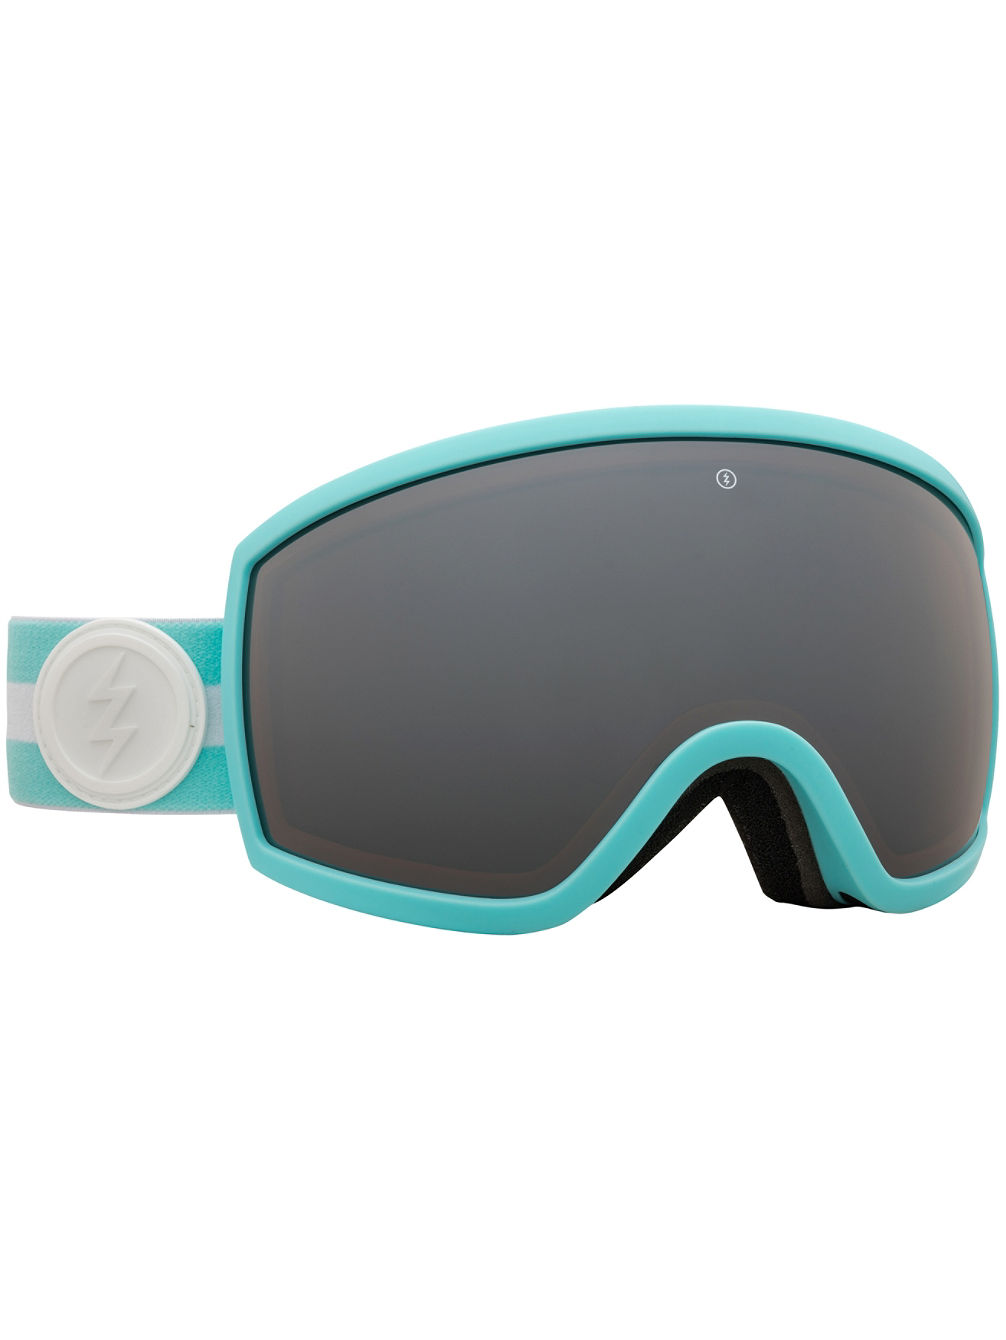 EG2-T.S Bar Aqua Goggle